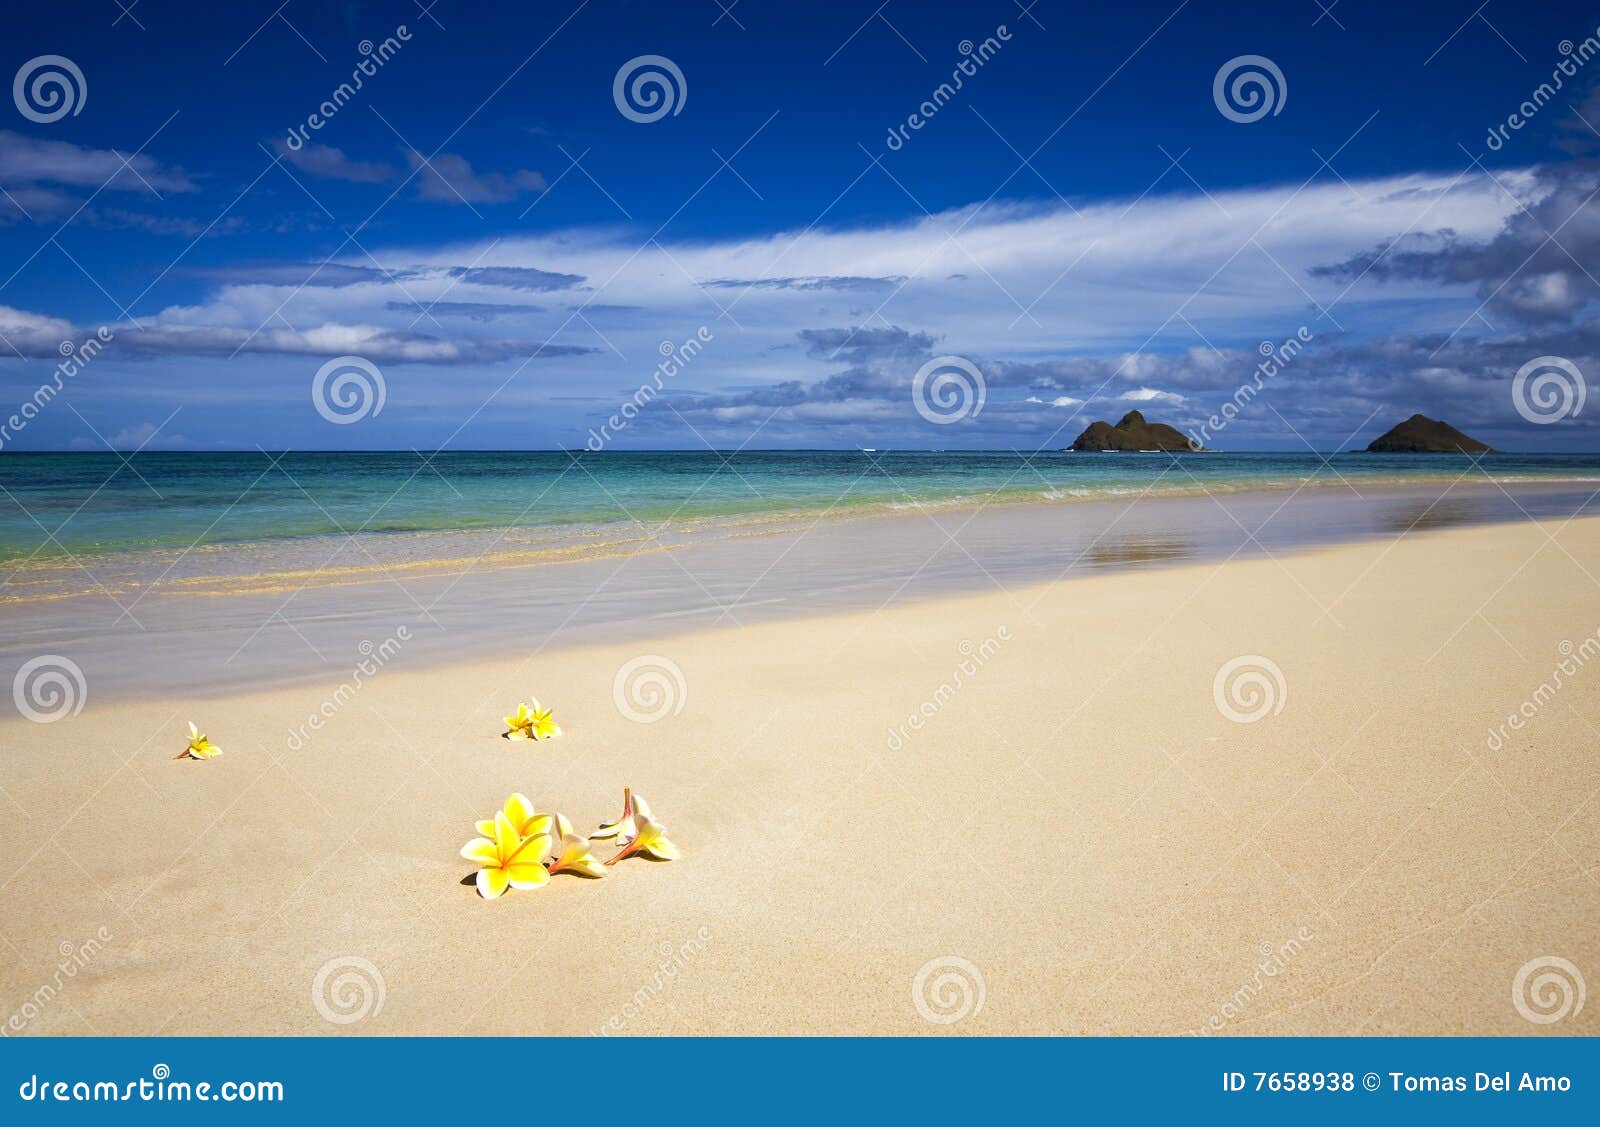 plumeria blossoms on a tropical beach